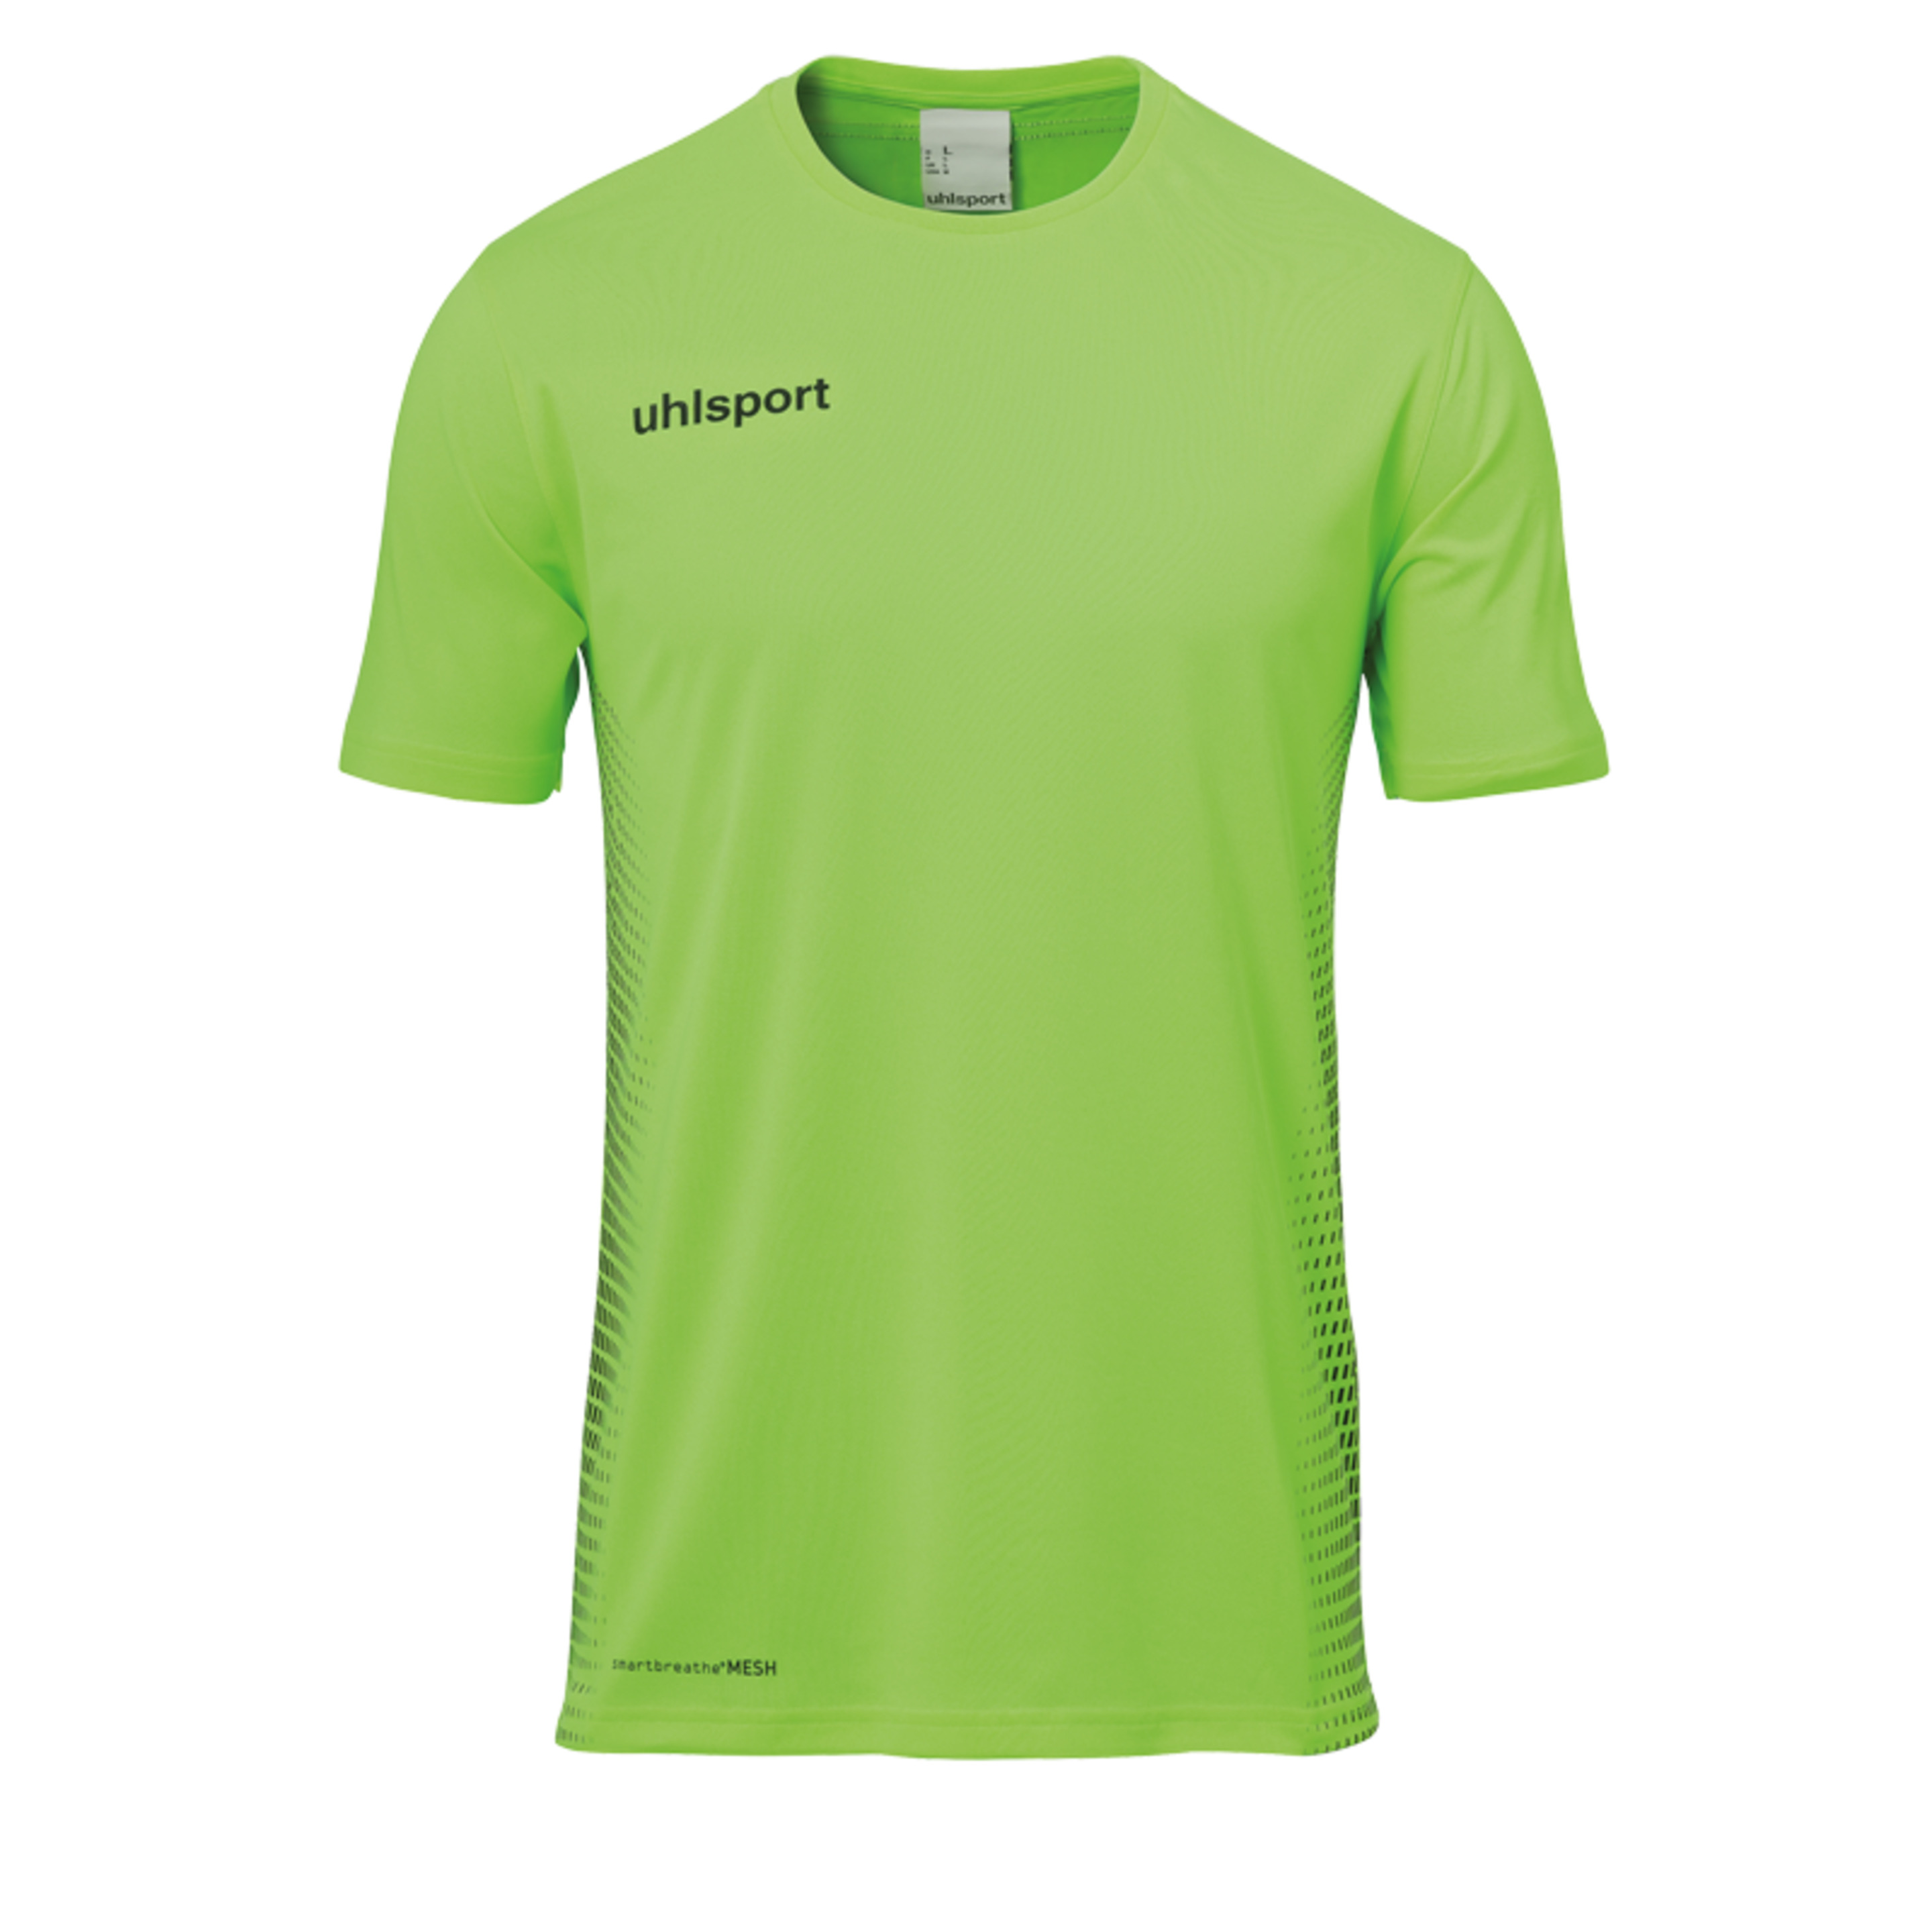 Score Kit Ss Verde Fluor/negro Uhlsport